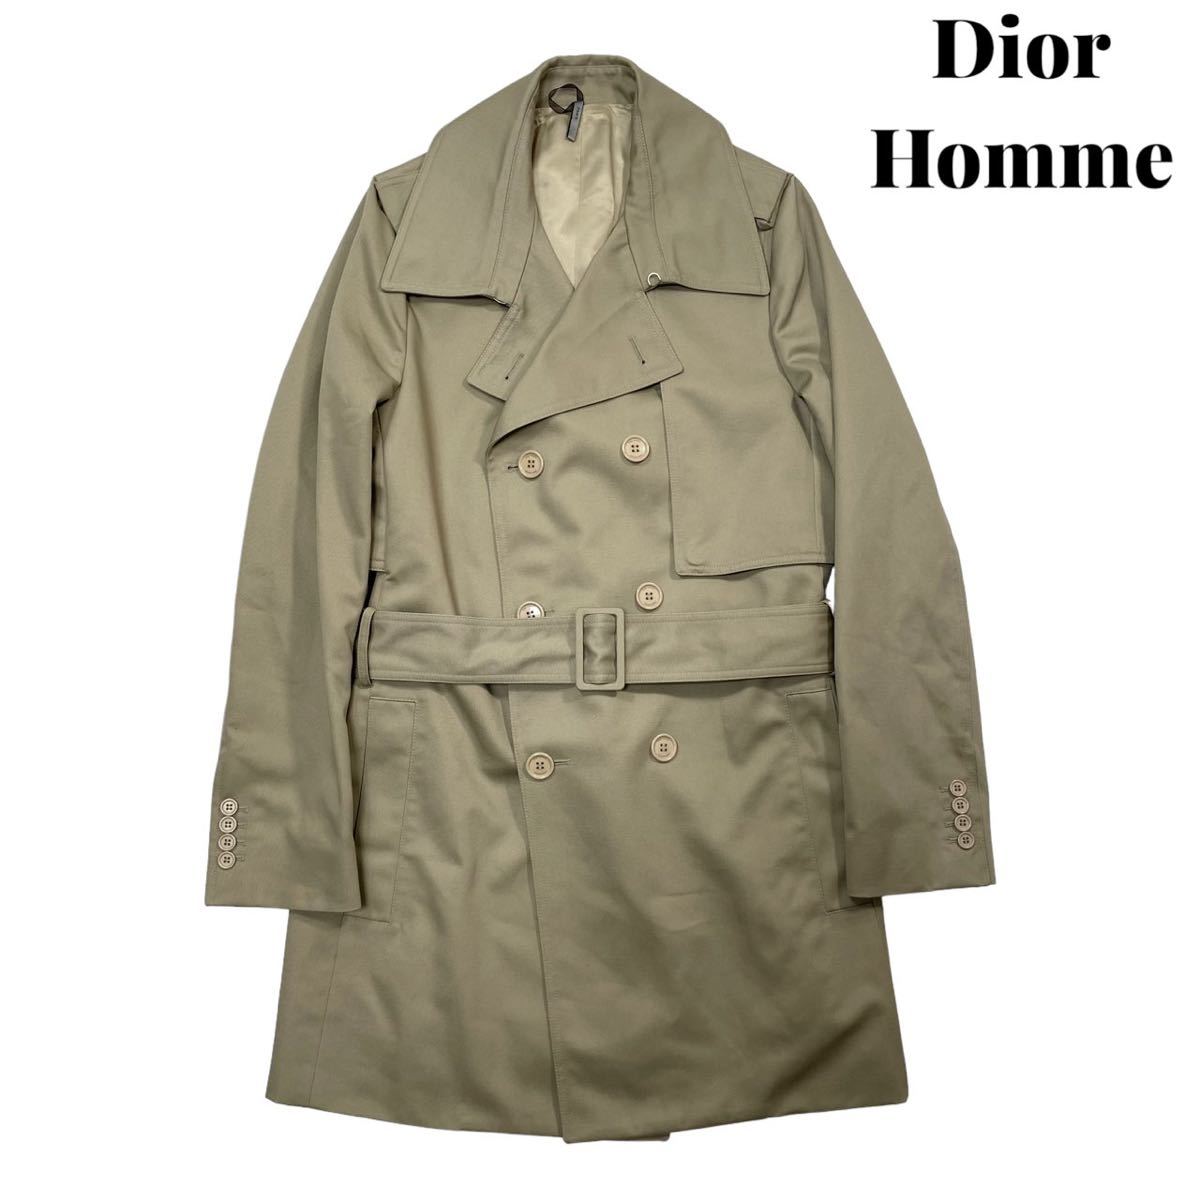 【美品】08SS Dior Homme ディオール オム トレンチコート クリスヴァンアッシュ KRIS VAN ASSCHE アーカイブ 44